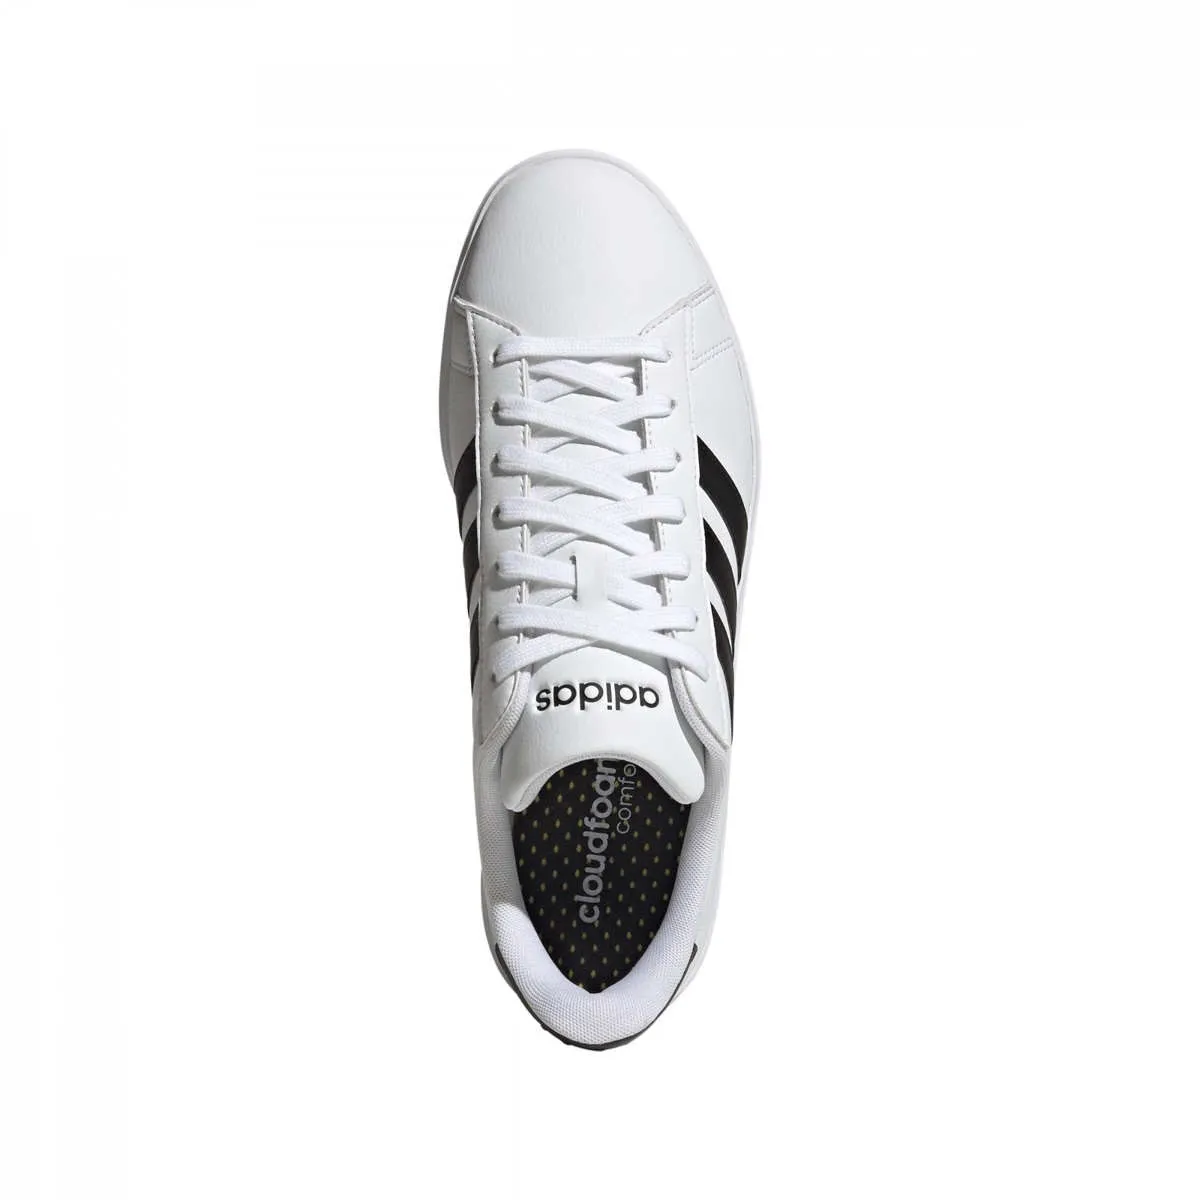 Zapatillas deportivas adidas Grand Court blanco/negro